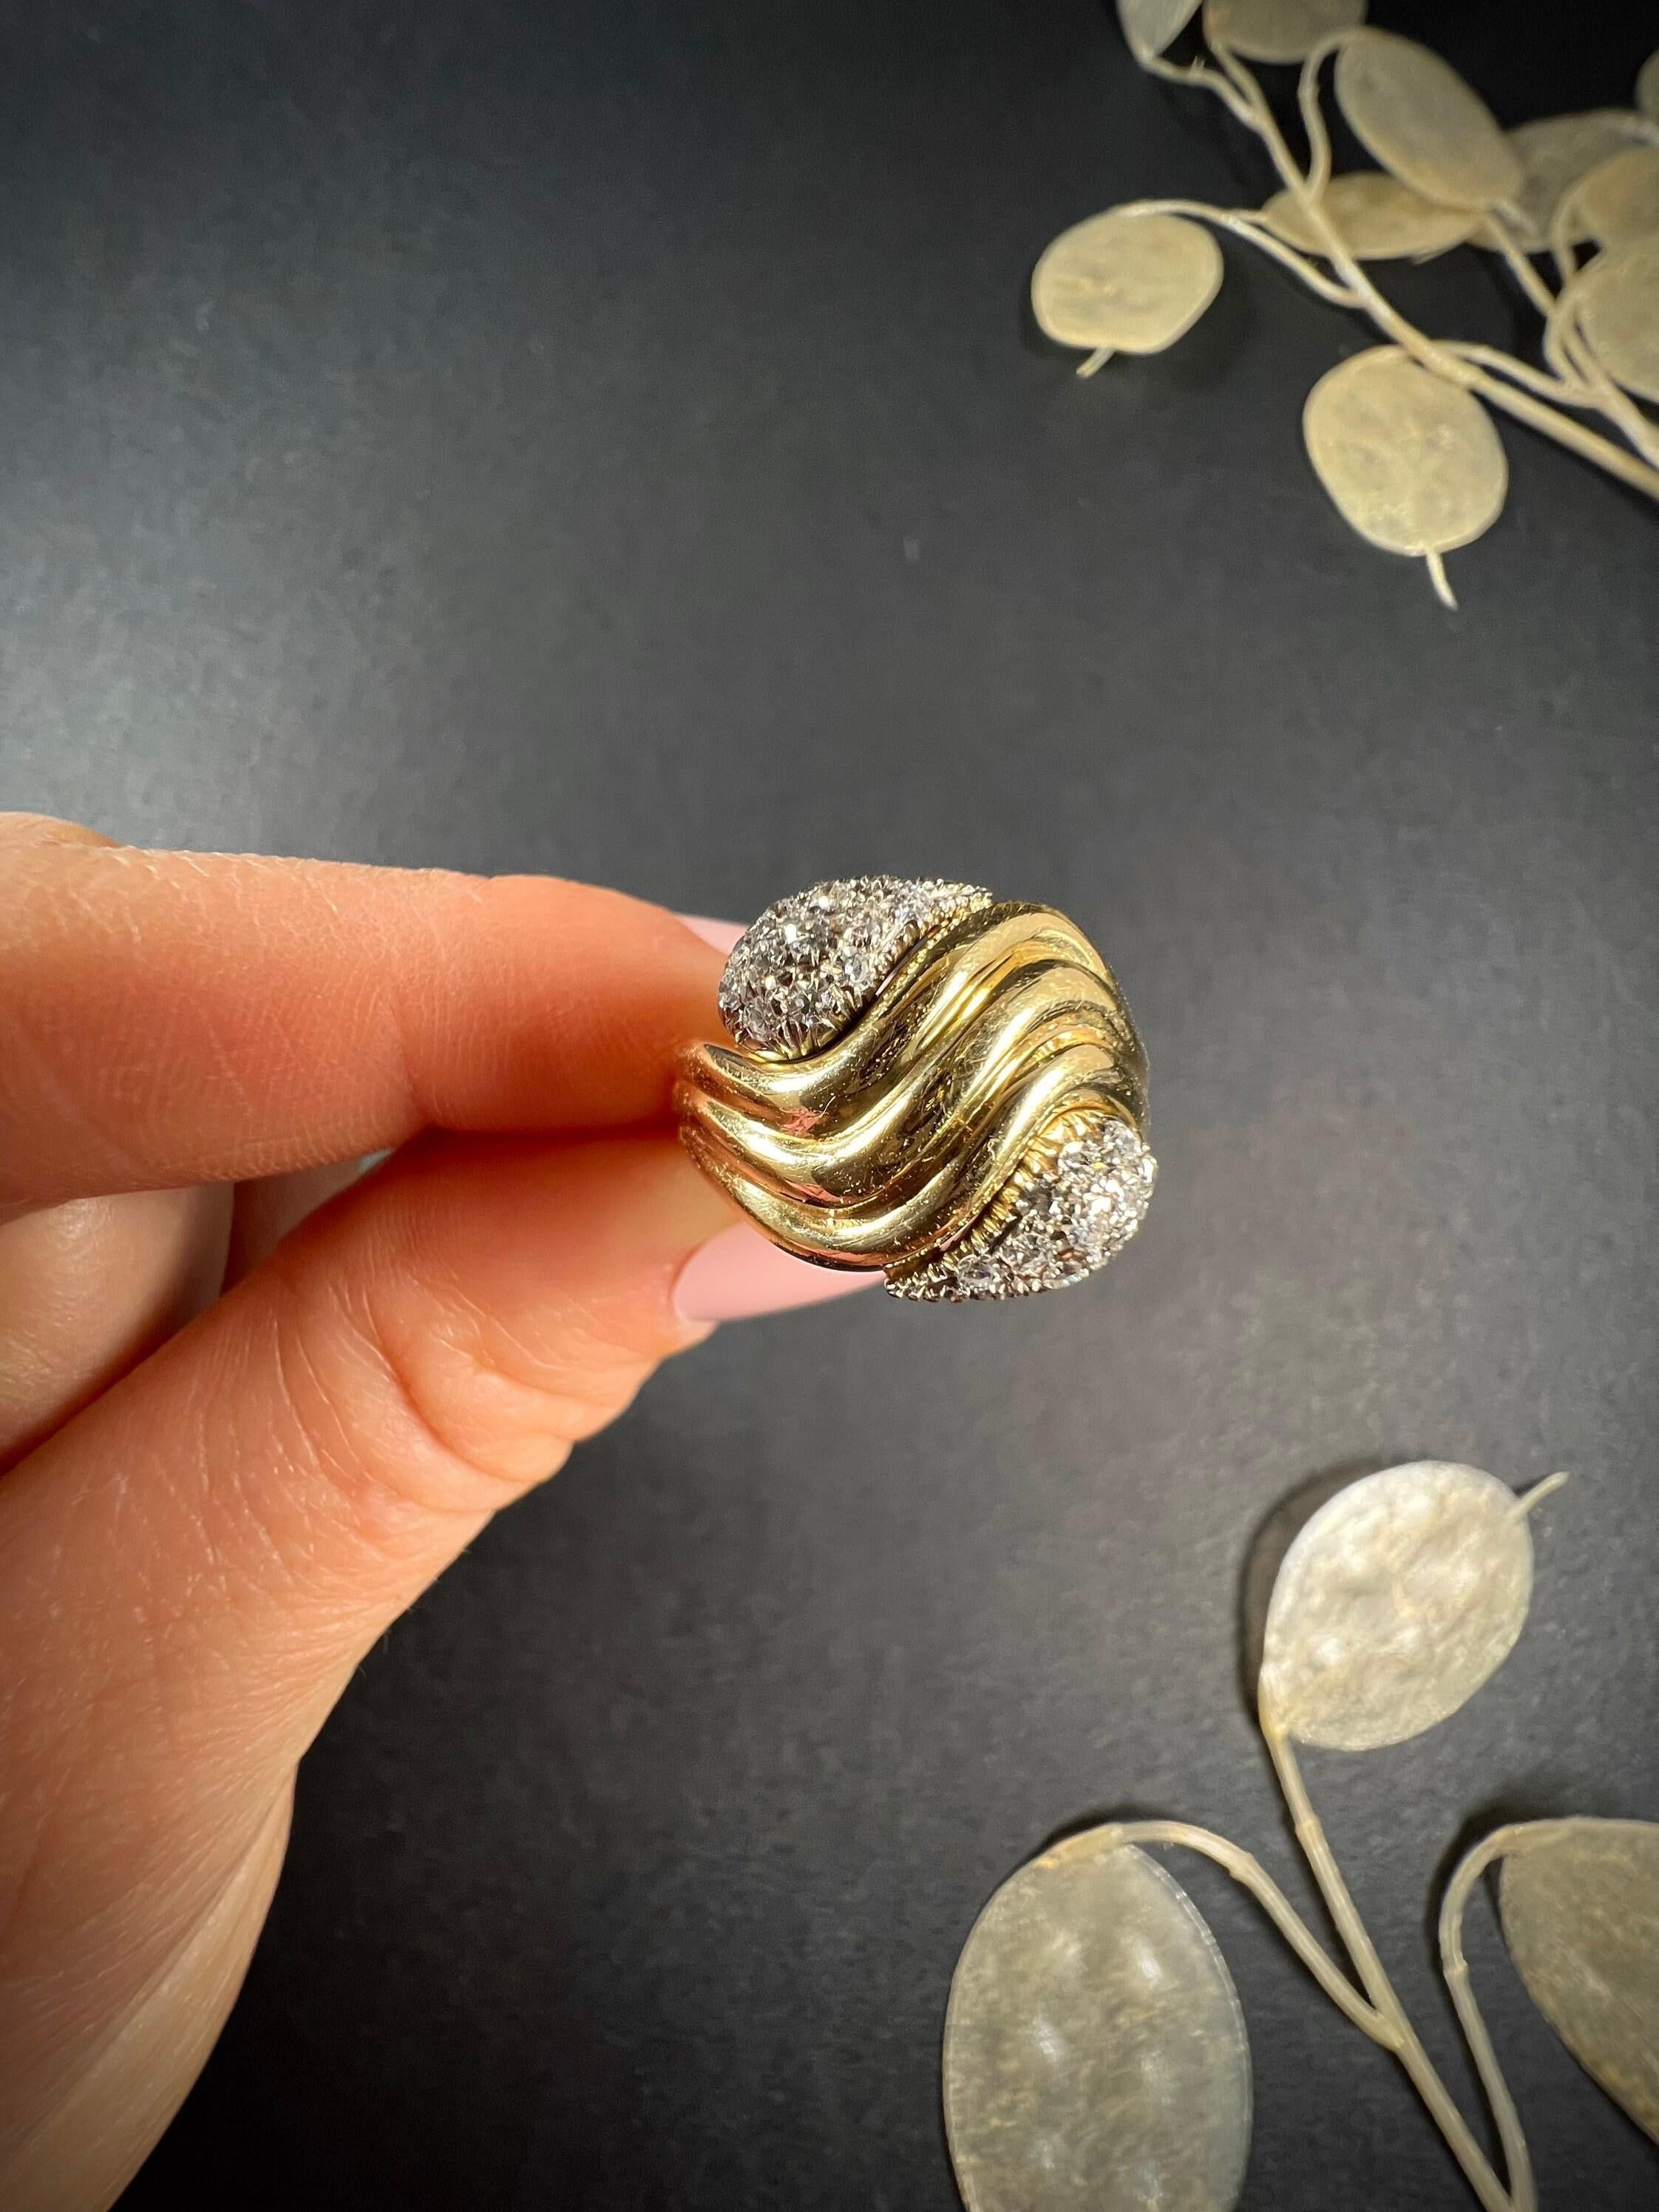 Vintage Snake Ring 

18ct Gold gestempelt 750

CIRCA 1980er Jahre

Fabelhafter, doppelköpfiger Schlangenring im Vintage-Stil. Beide Köpfe sind mit funkelnden, natürlichen Diamanten besetzt, die in Weißgold eingefasst sind. Die gelbgoldenen Körper